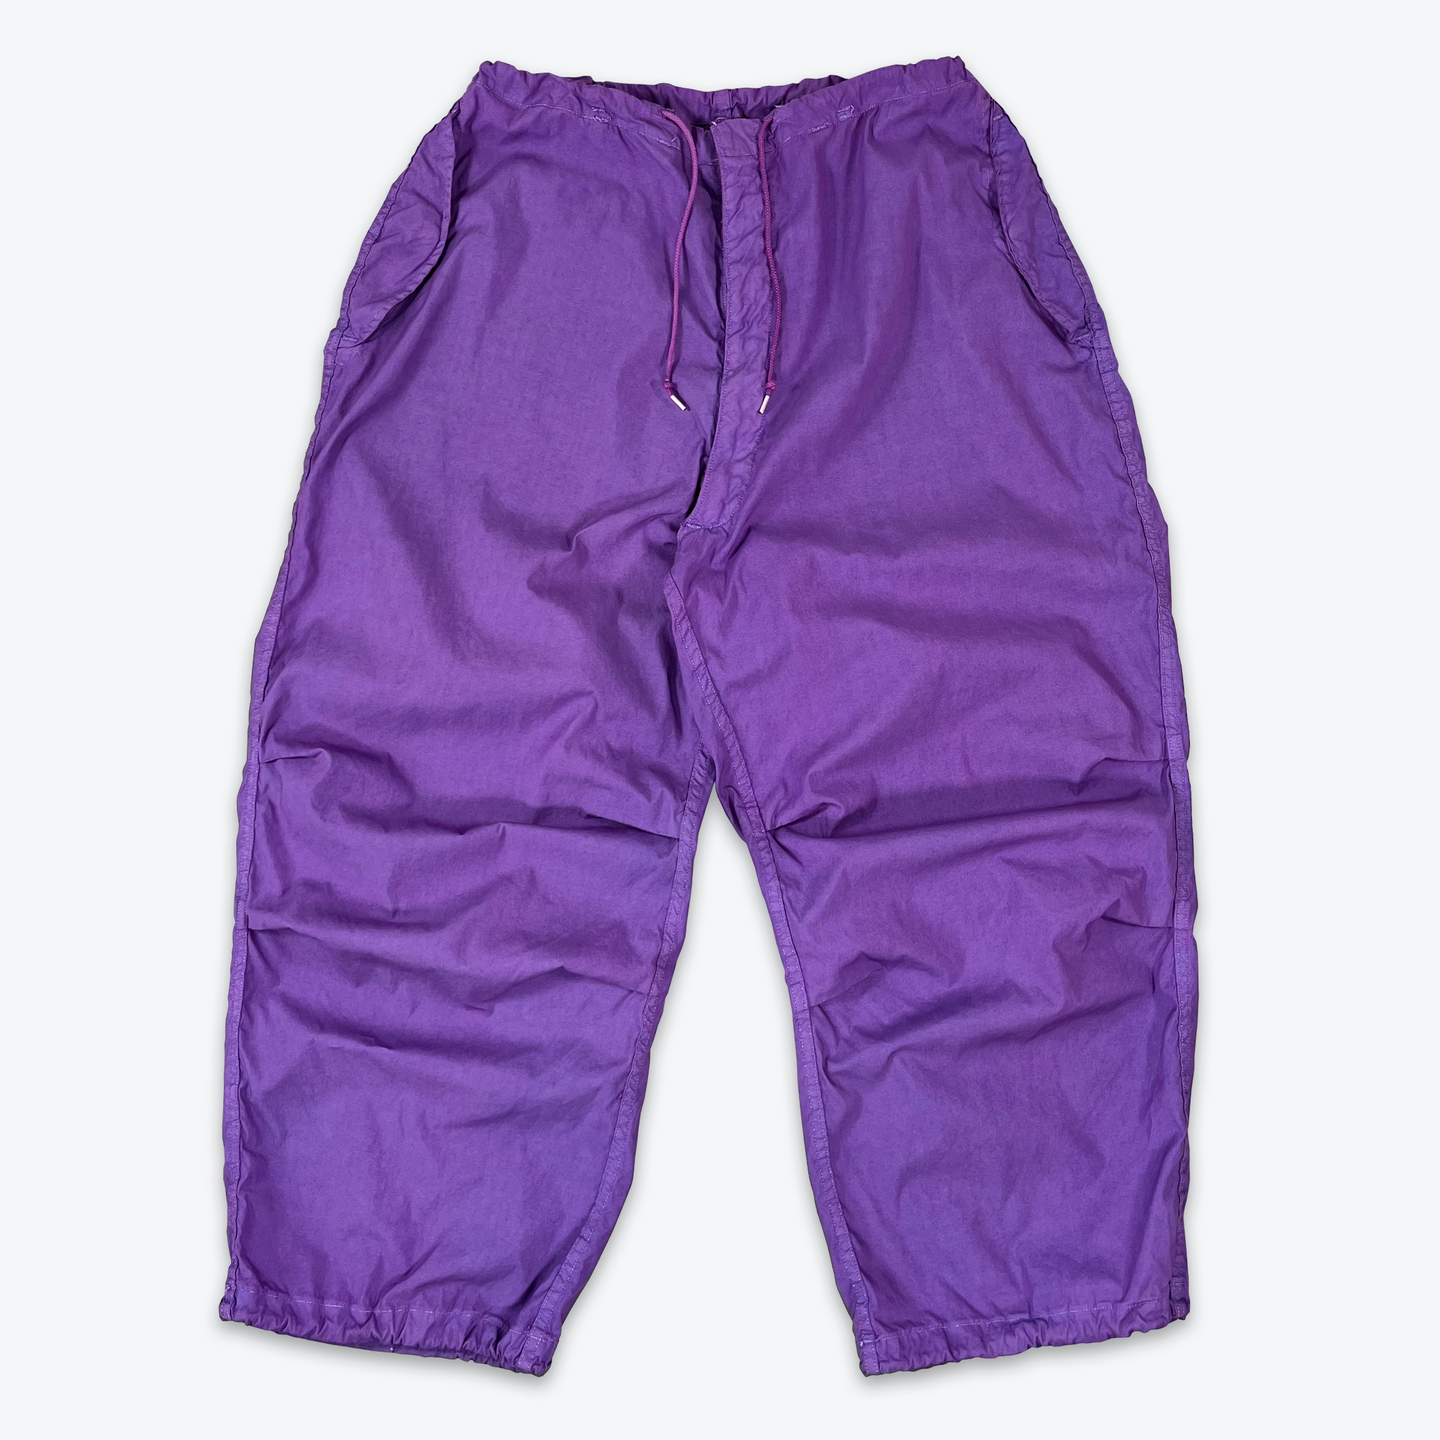 Vintage Military Pants (Purple)